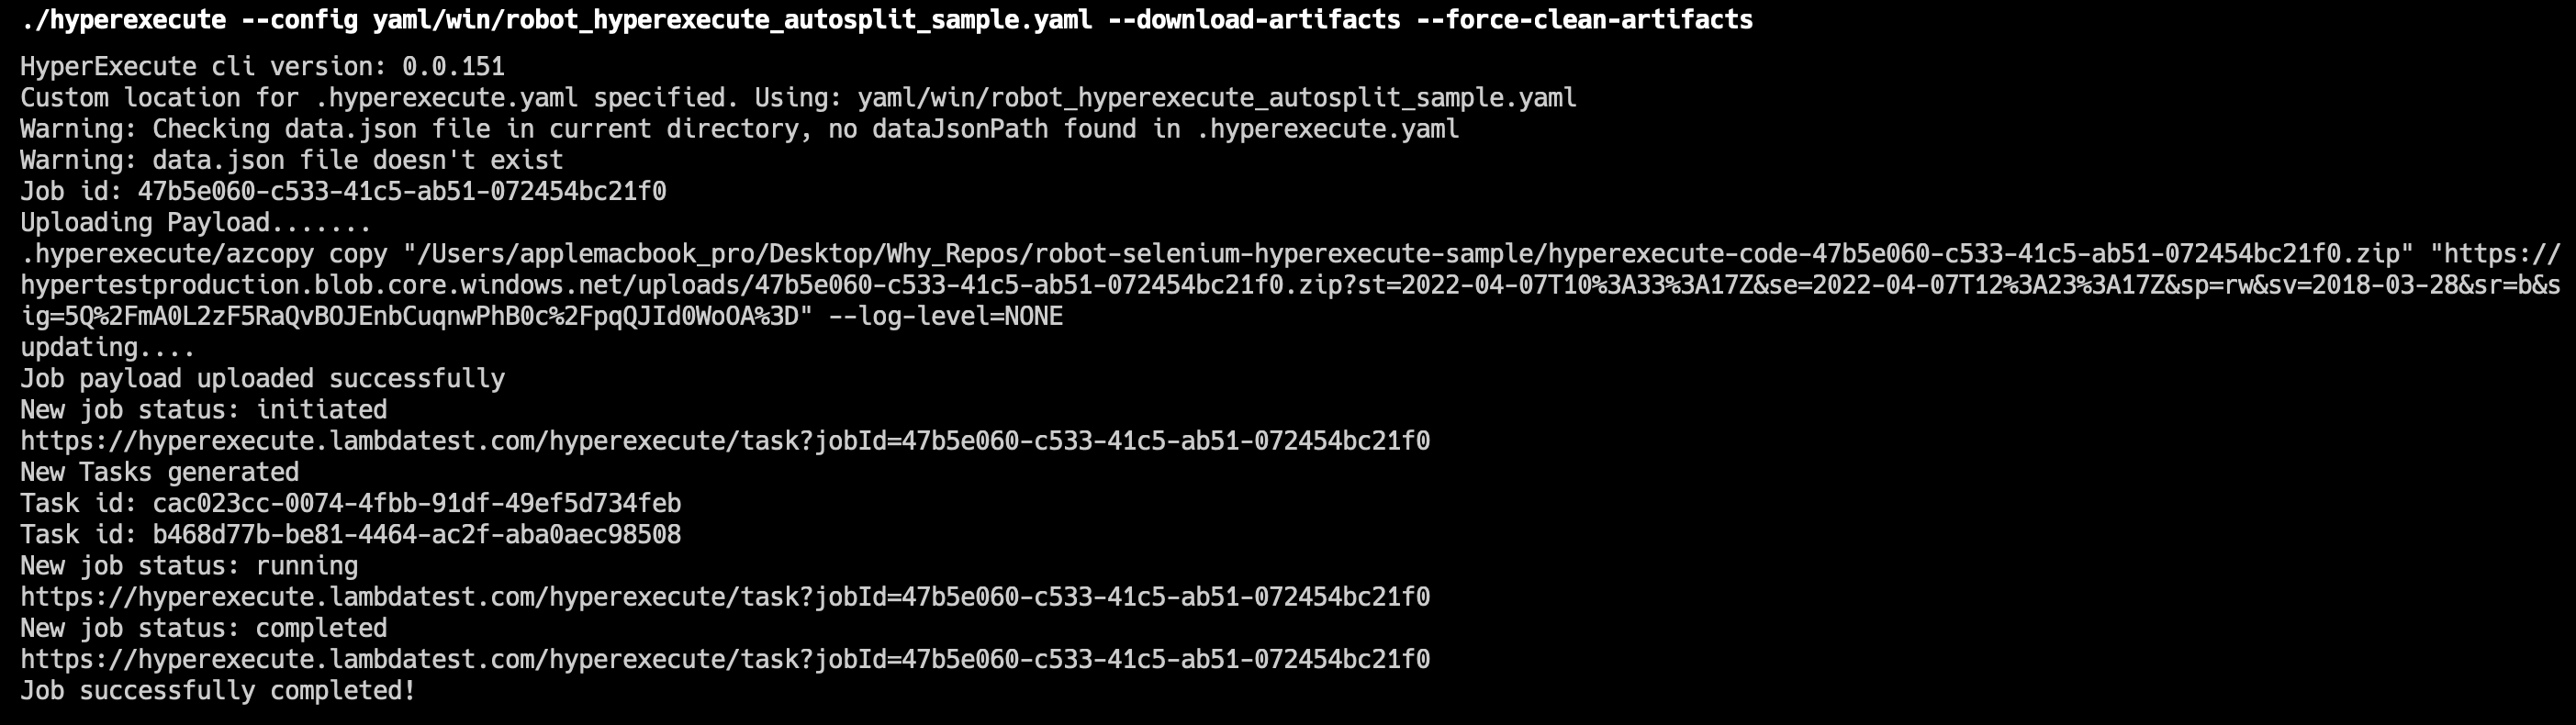 Robot HyperExecute Terminal Logs